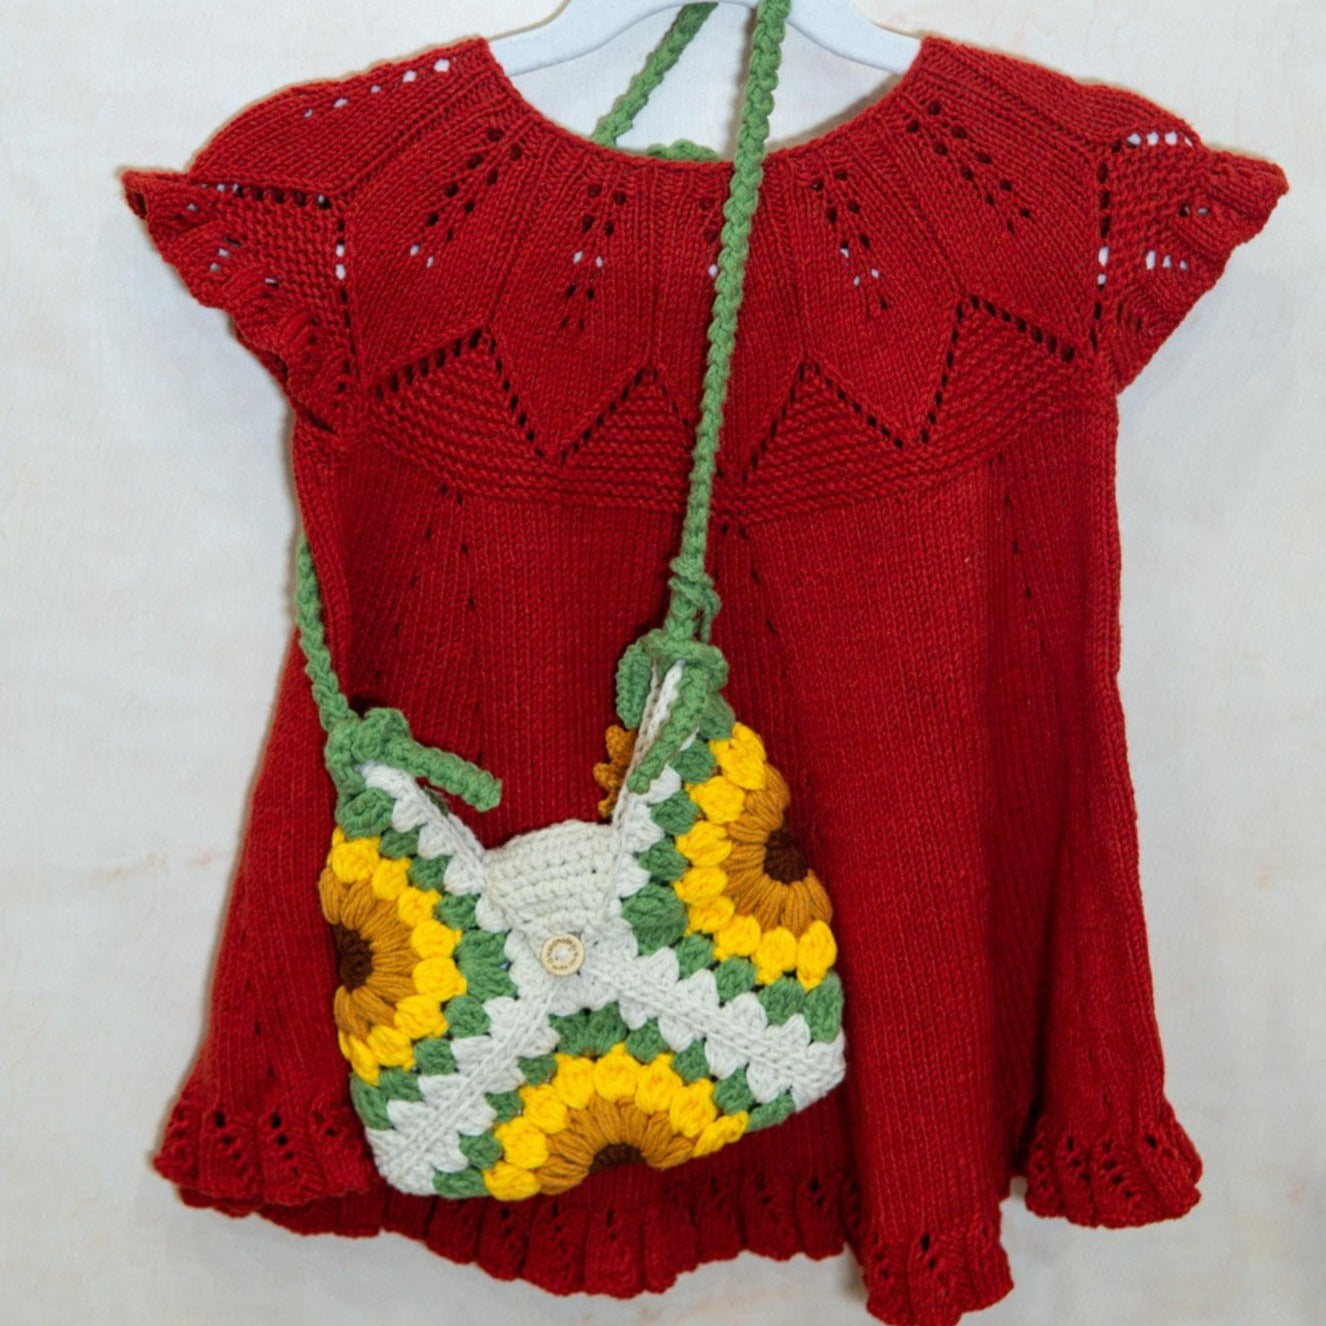 Lillian Red Knit Dress